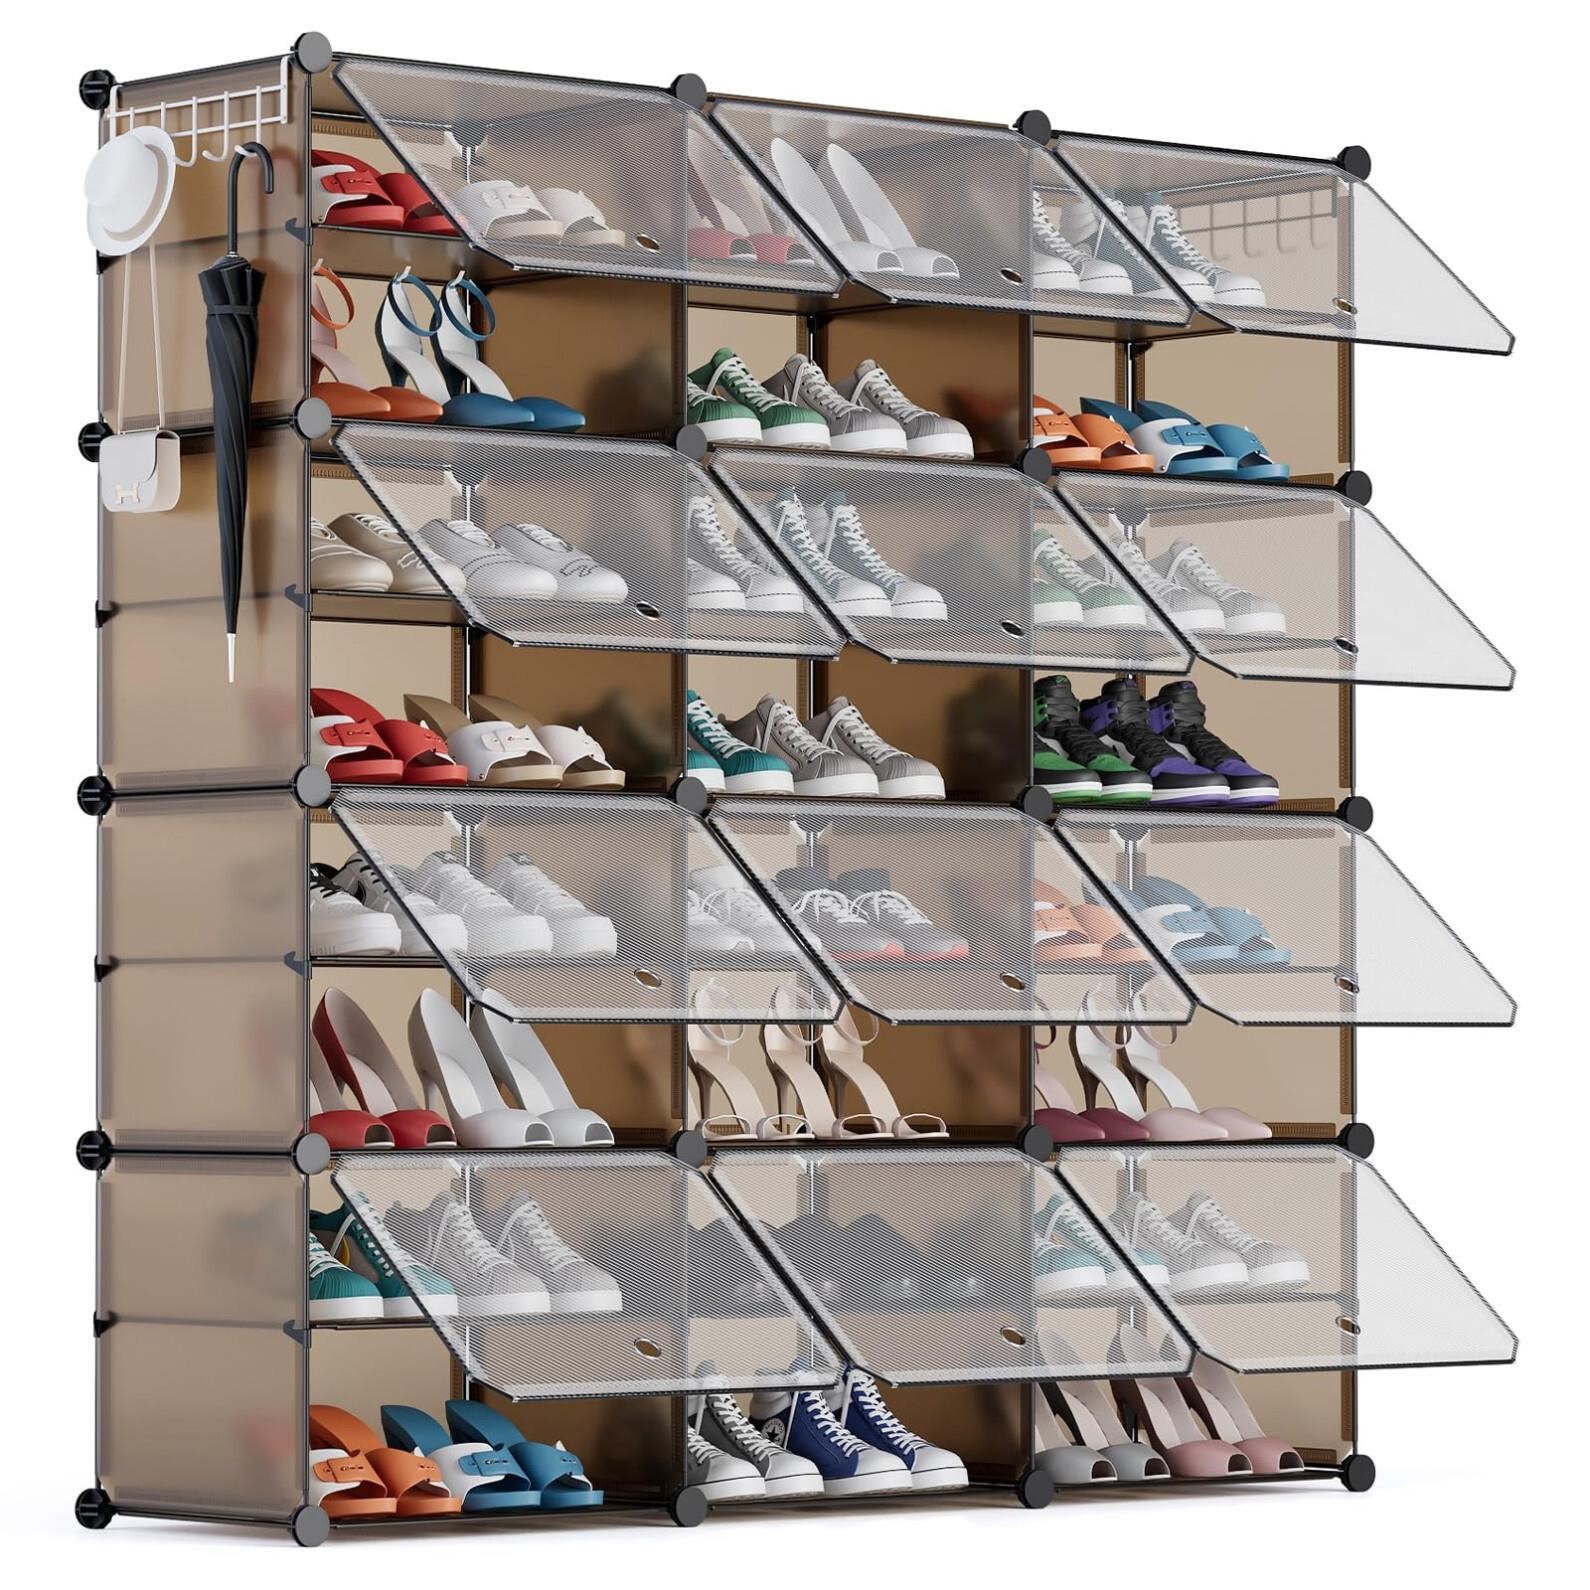 YIHATA Shoe Rack Organizer, 48 Pair Shoe Storage